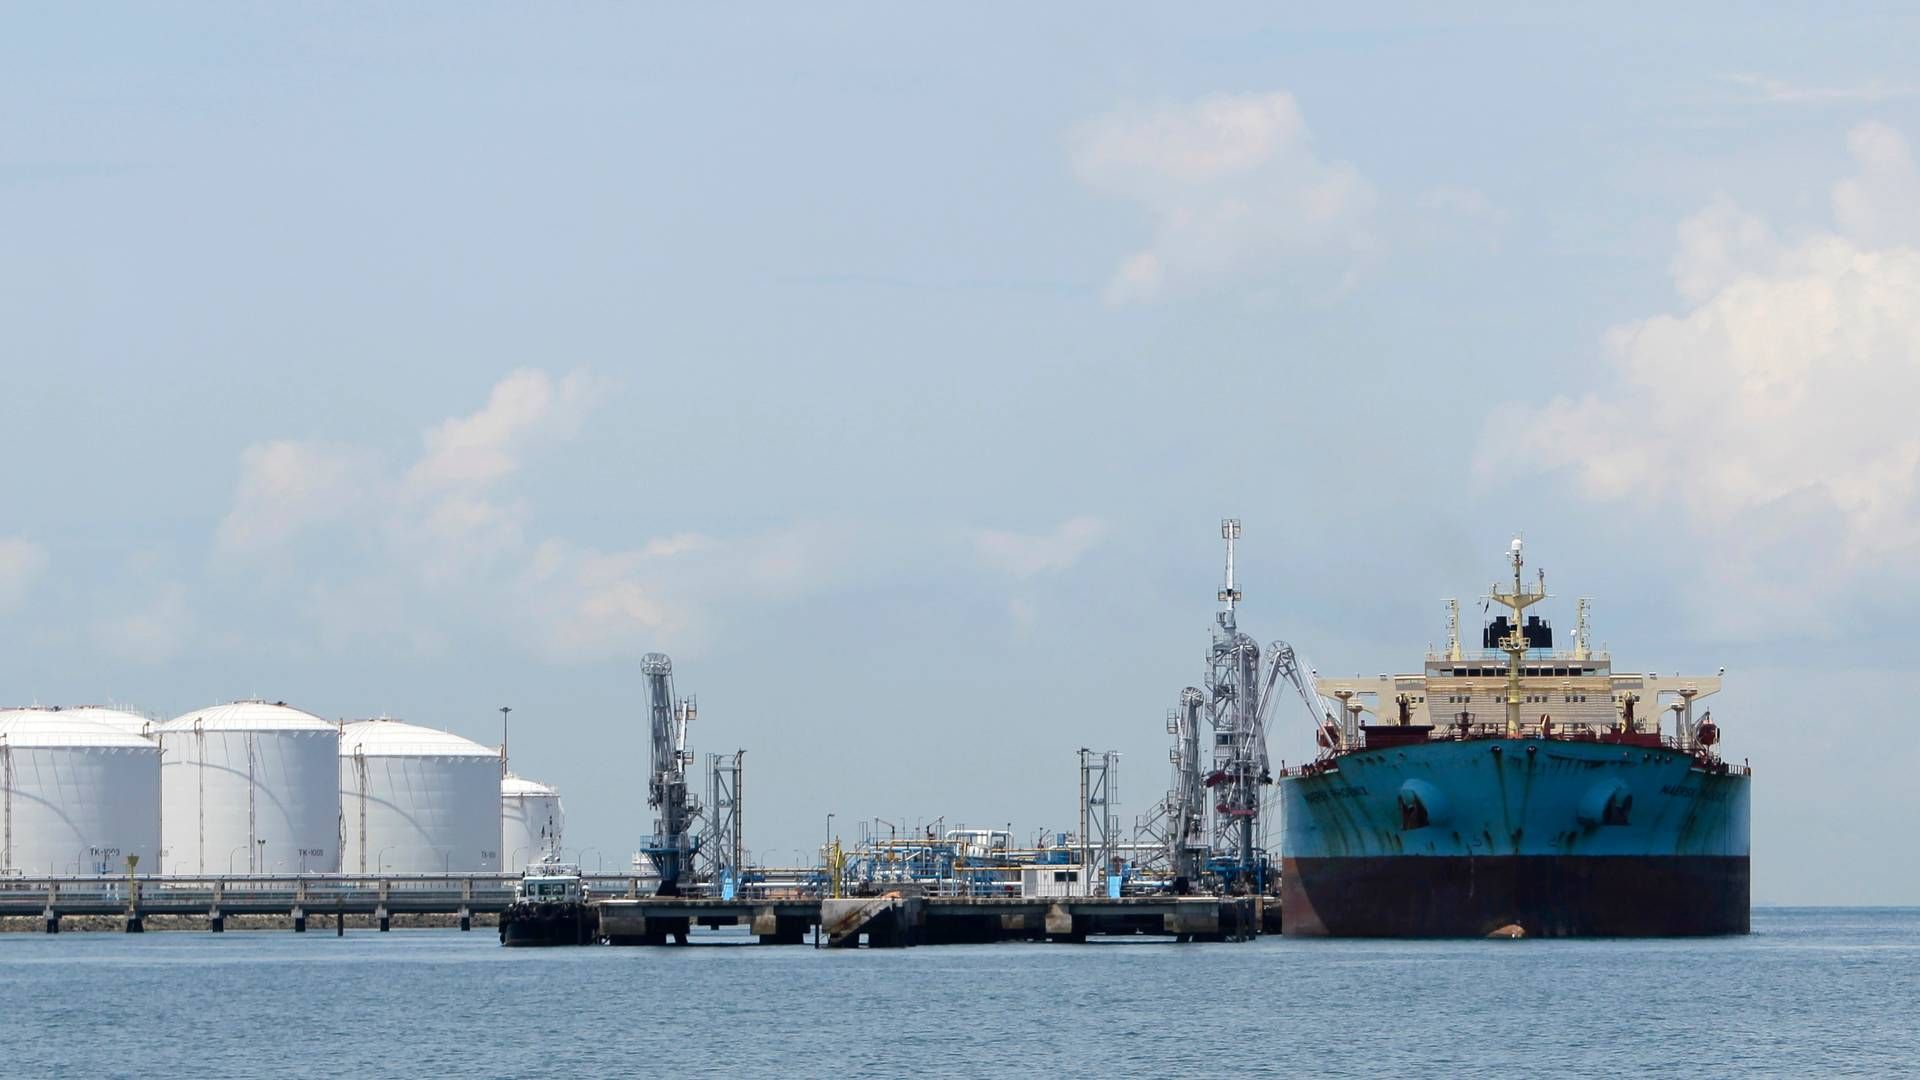 En forenkling af organisationen har kostet 14 chefer jobbet i Maersk Tankers. | Foto: Tim Chong/Reuters/Ritzau Scanpix